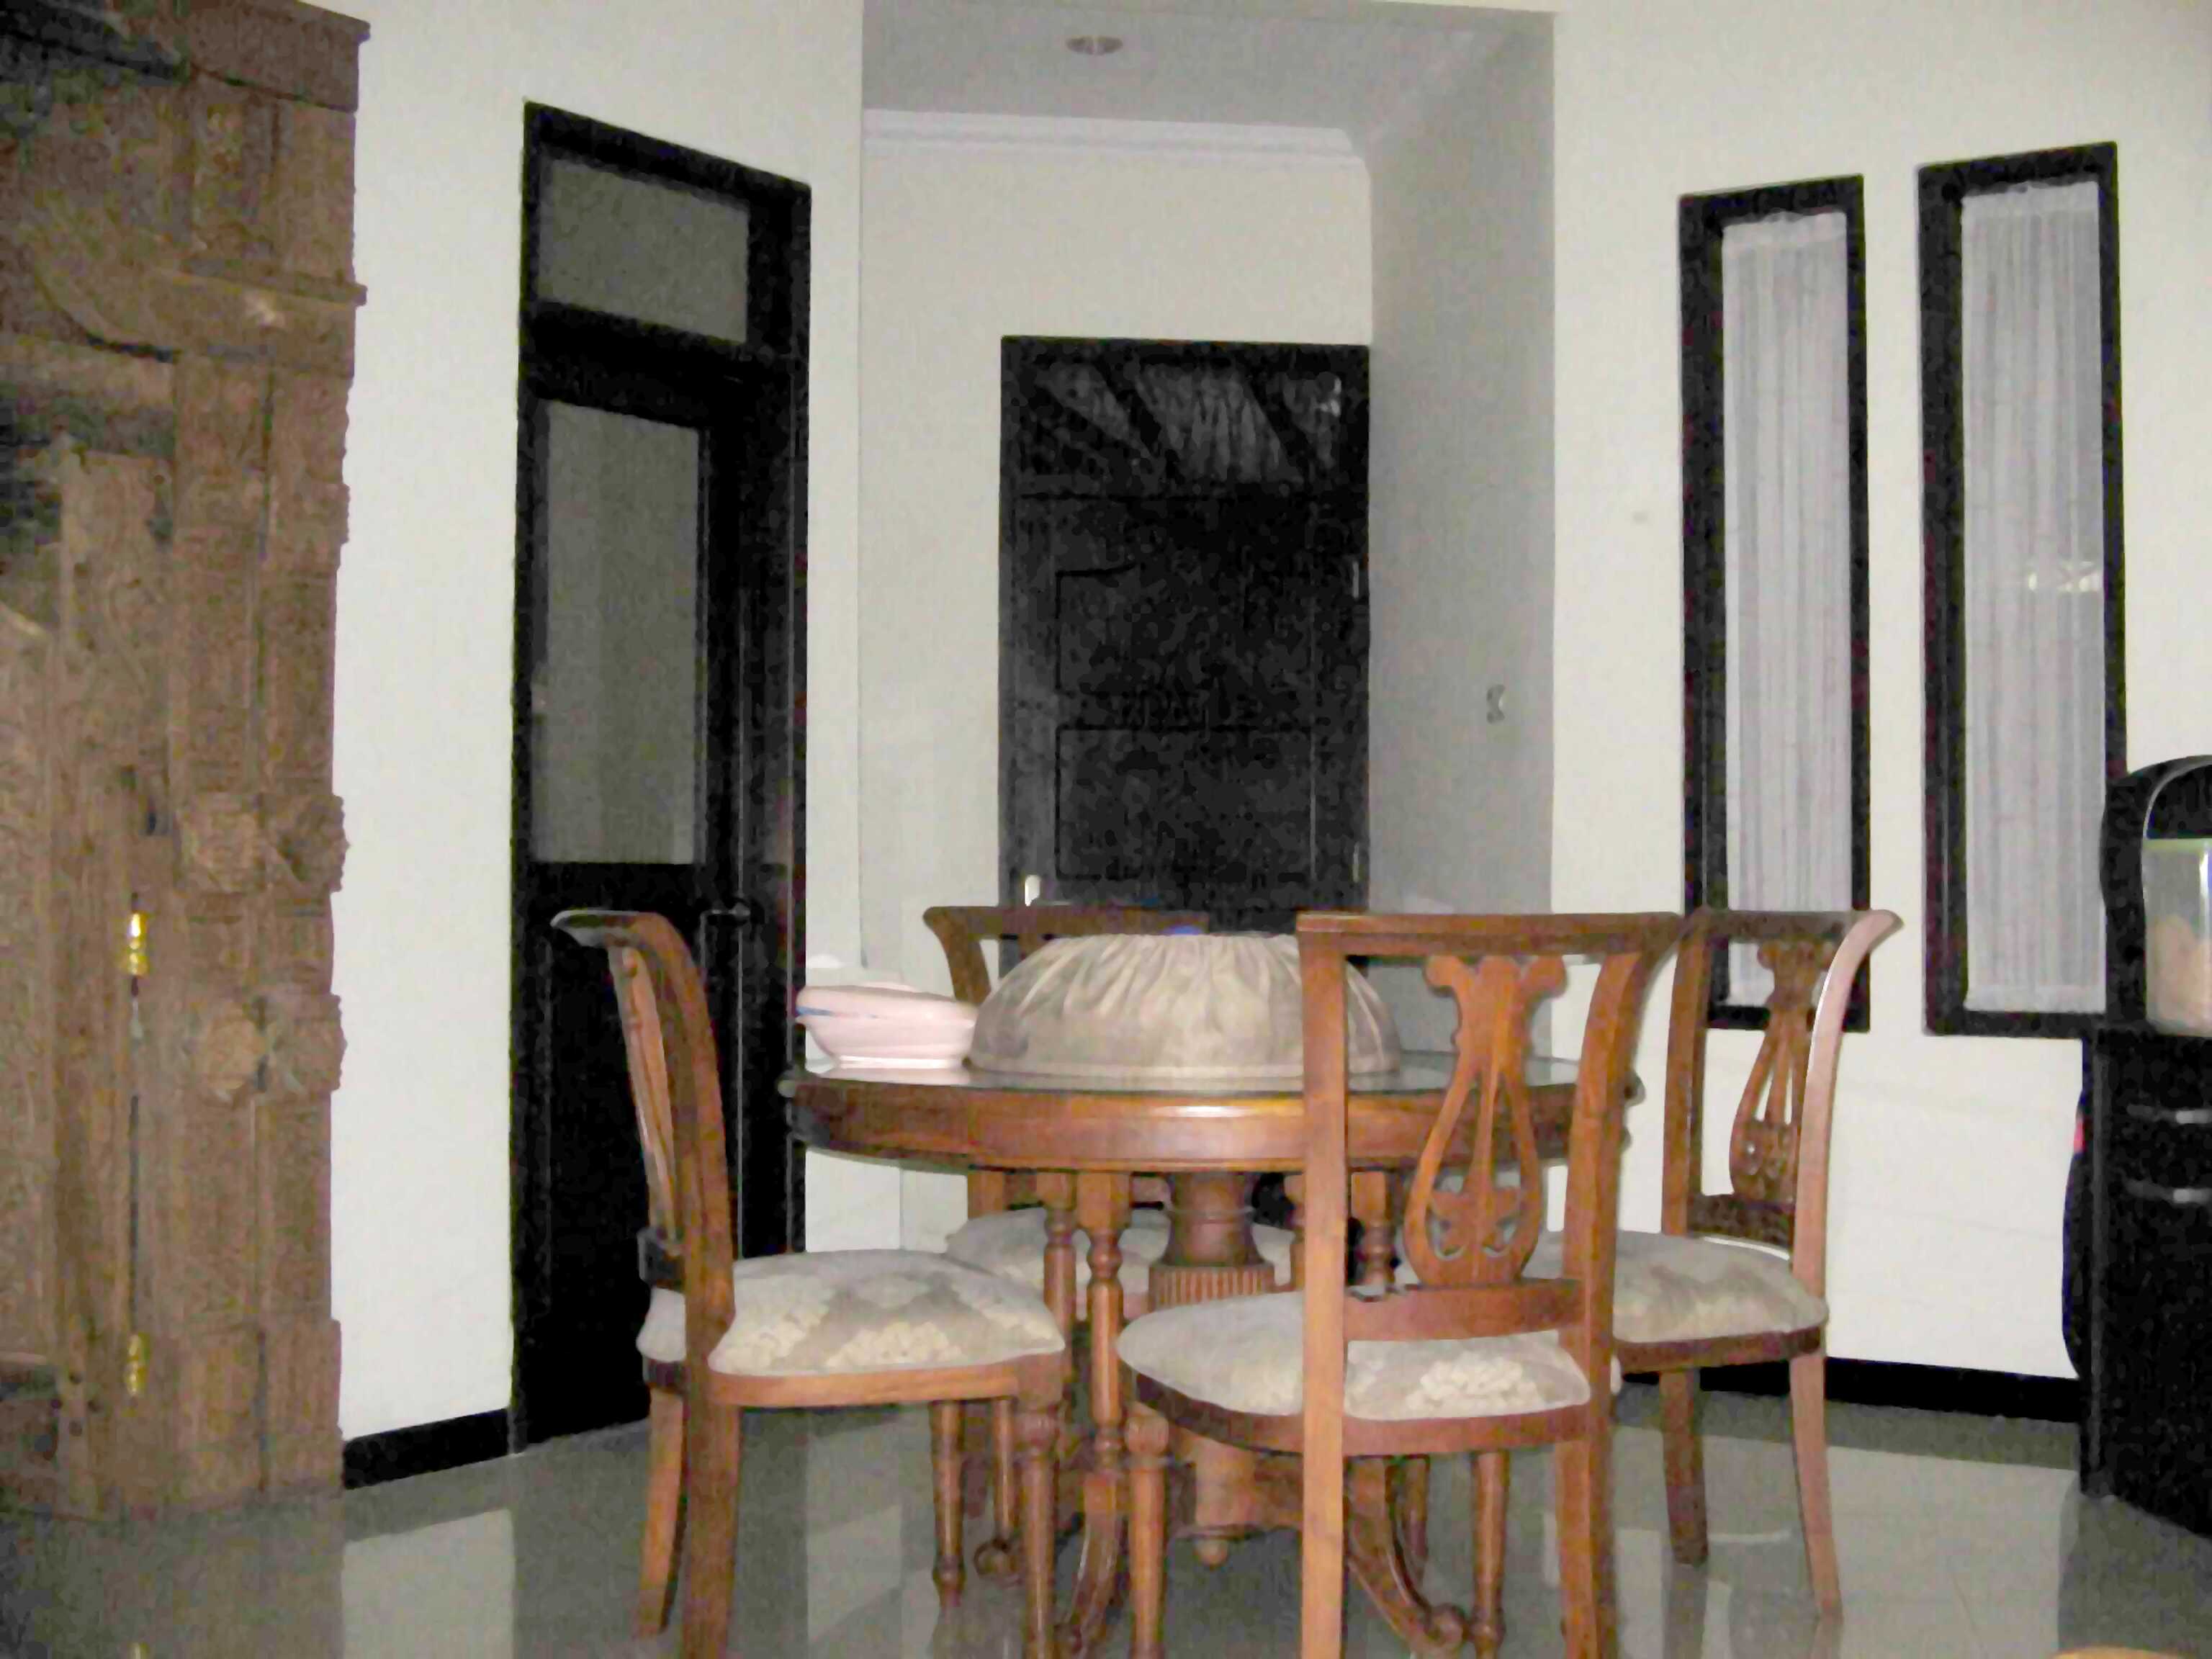 Rumah Baru Untuk Dijual Di Pasir Gudang 2014 - Dwiyokos